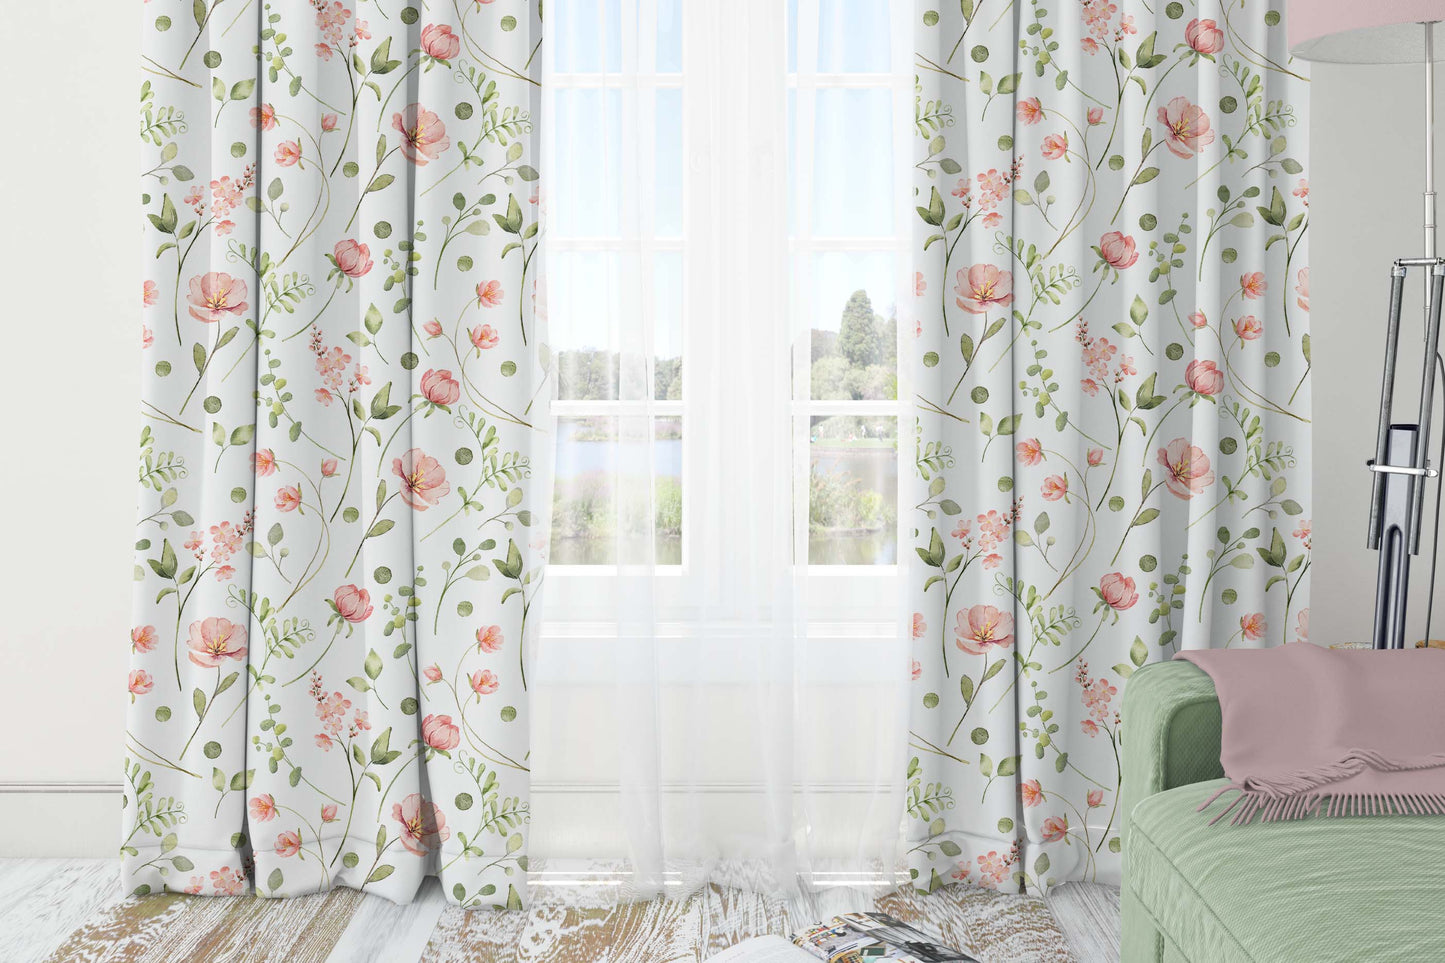 Wildflowers Curtains, Poppy Nursery curtains